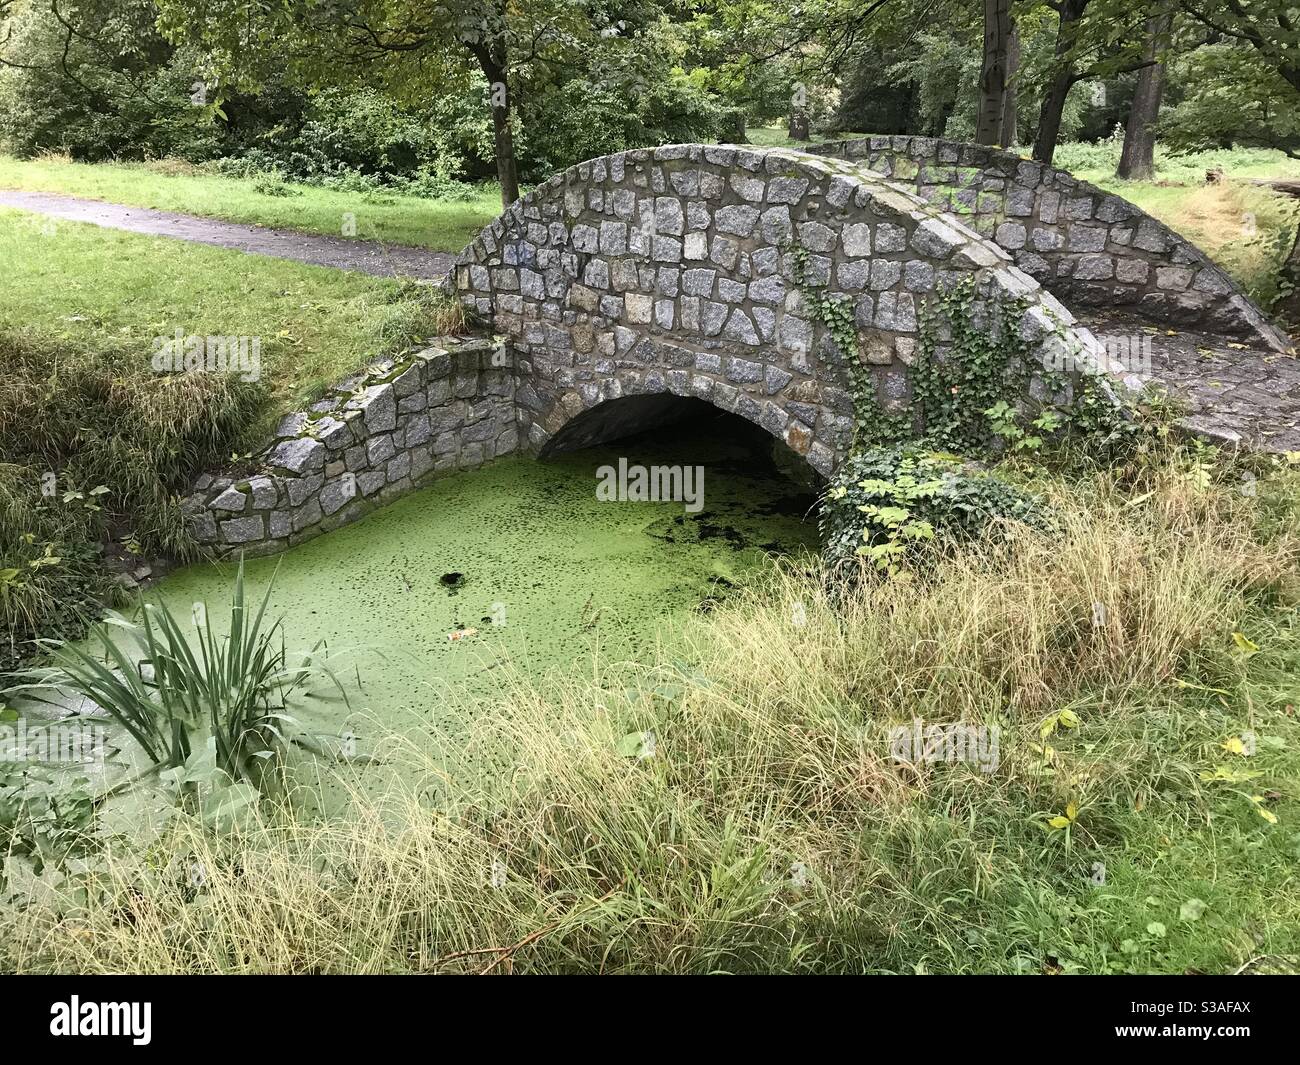 Pont de pierre sur un ruisseau avec eau stagnante Banque D'Images